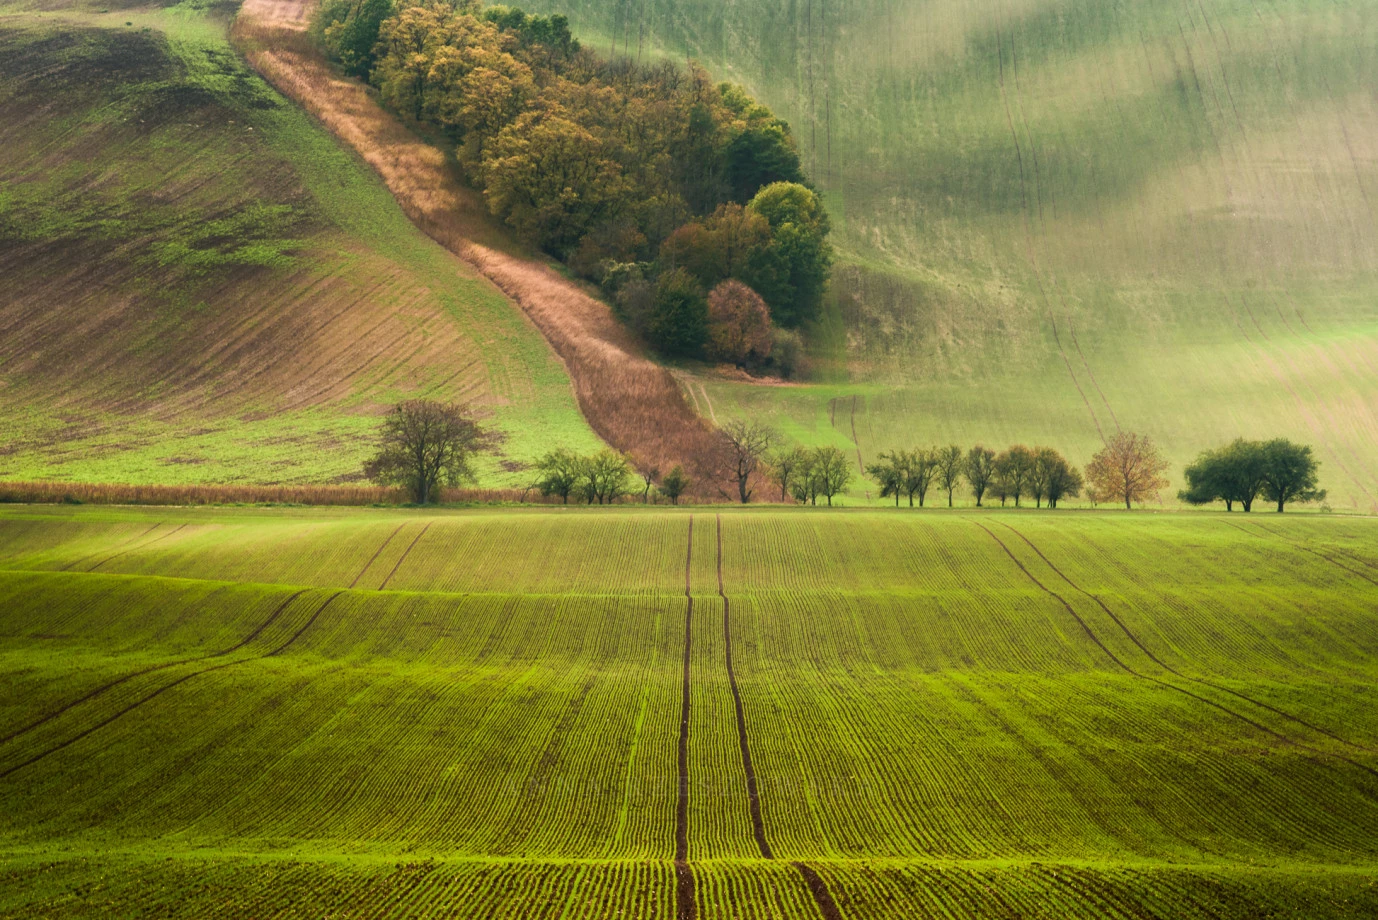 zdjęcia katowice fotograf anna-rzeszowska portfolio zdjecia krajobrazu gory mazury